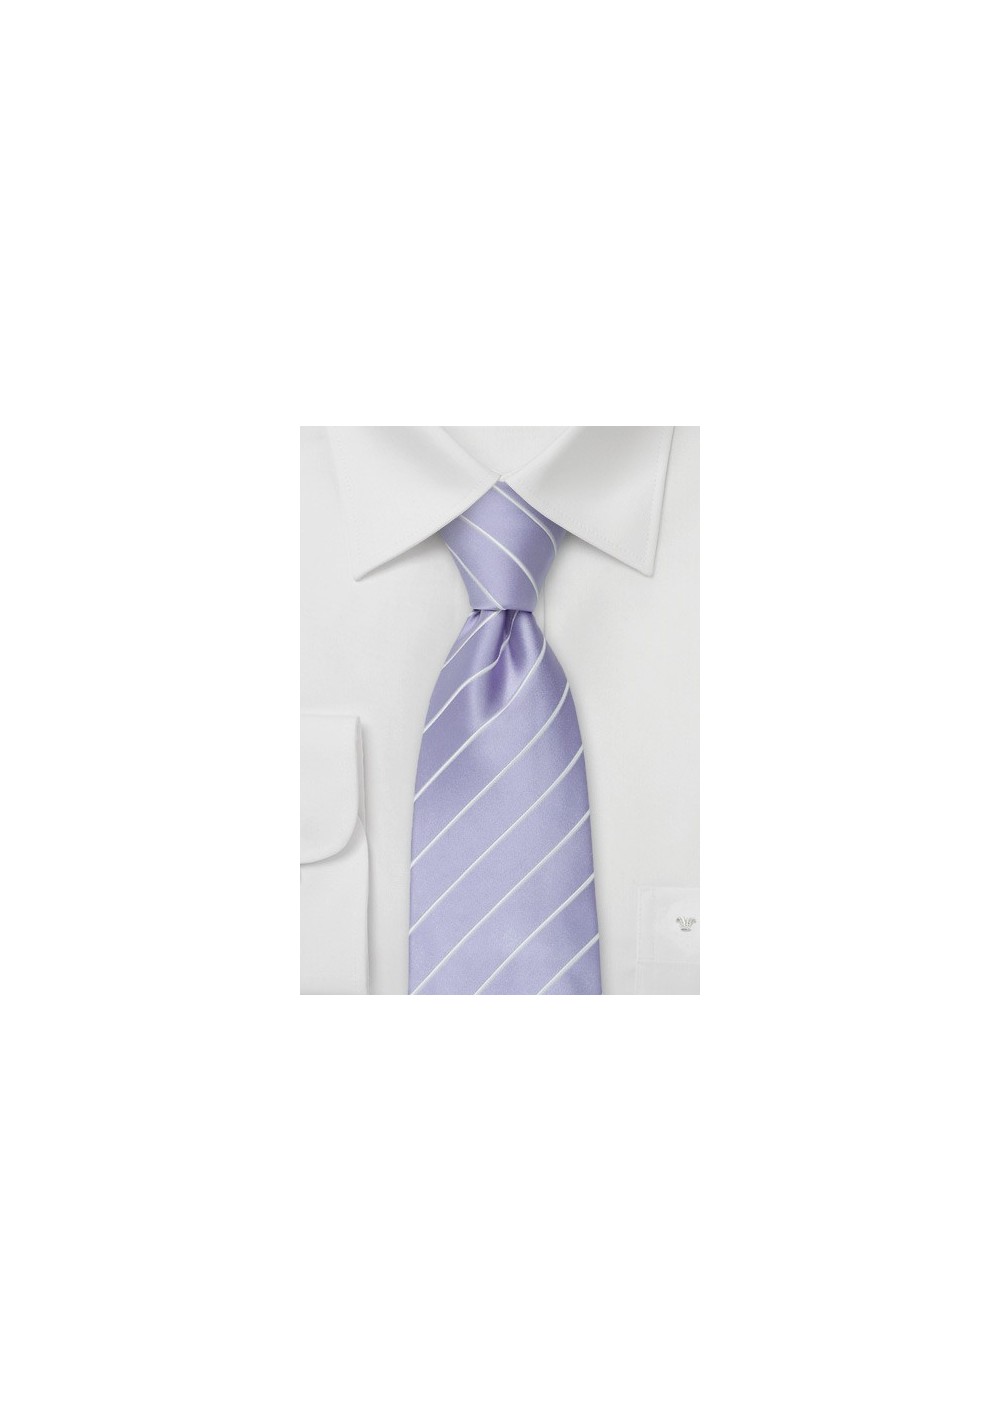 Trendy Neckties - Lilac striped necktie